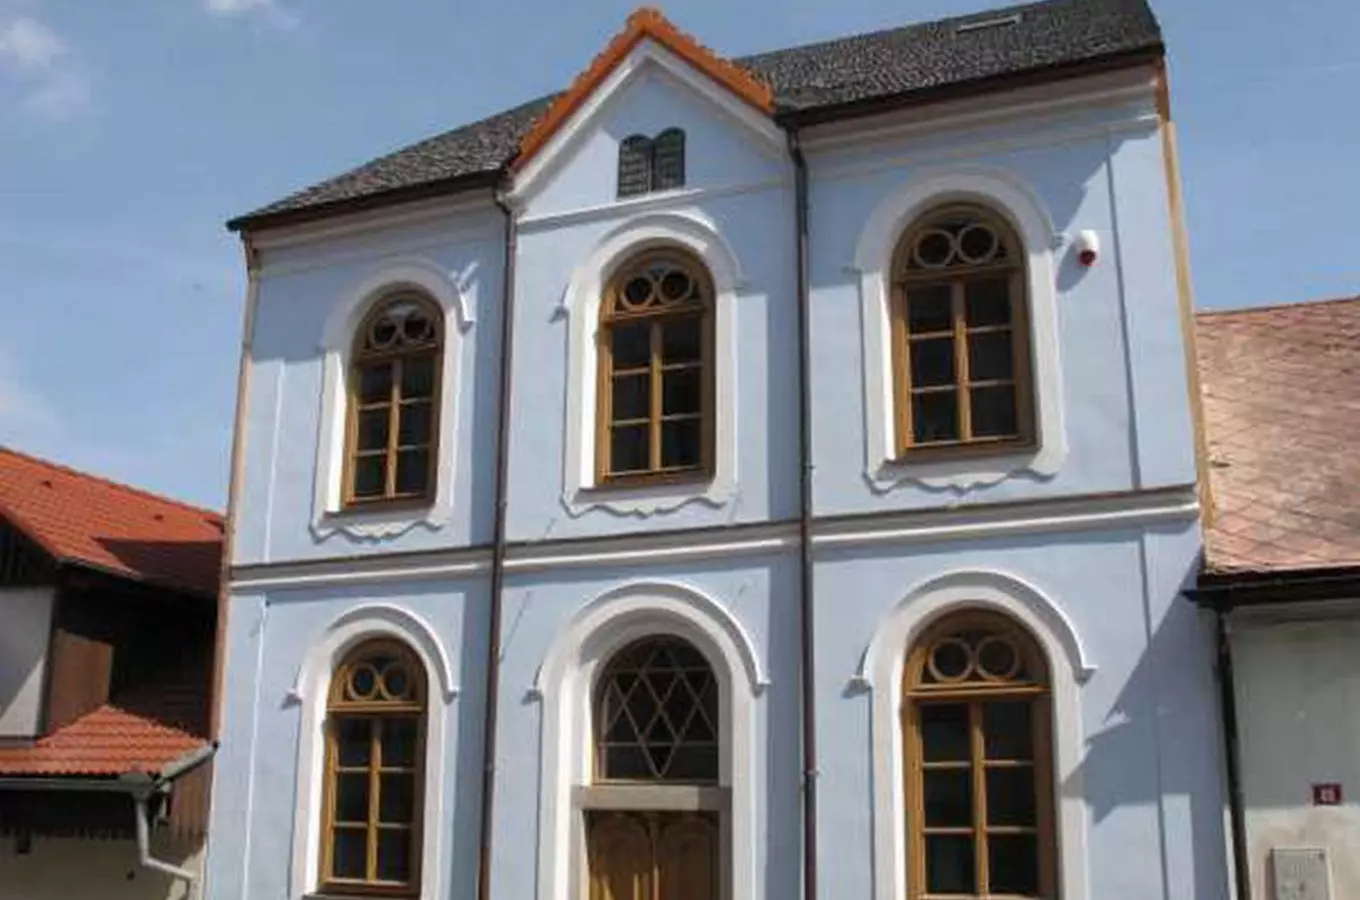 Horská synagoga Hartmanice